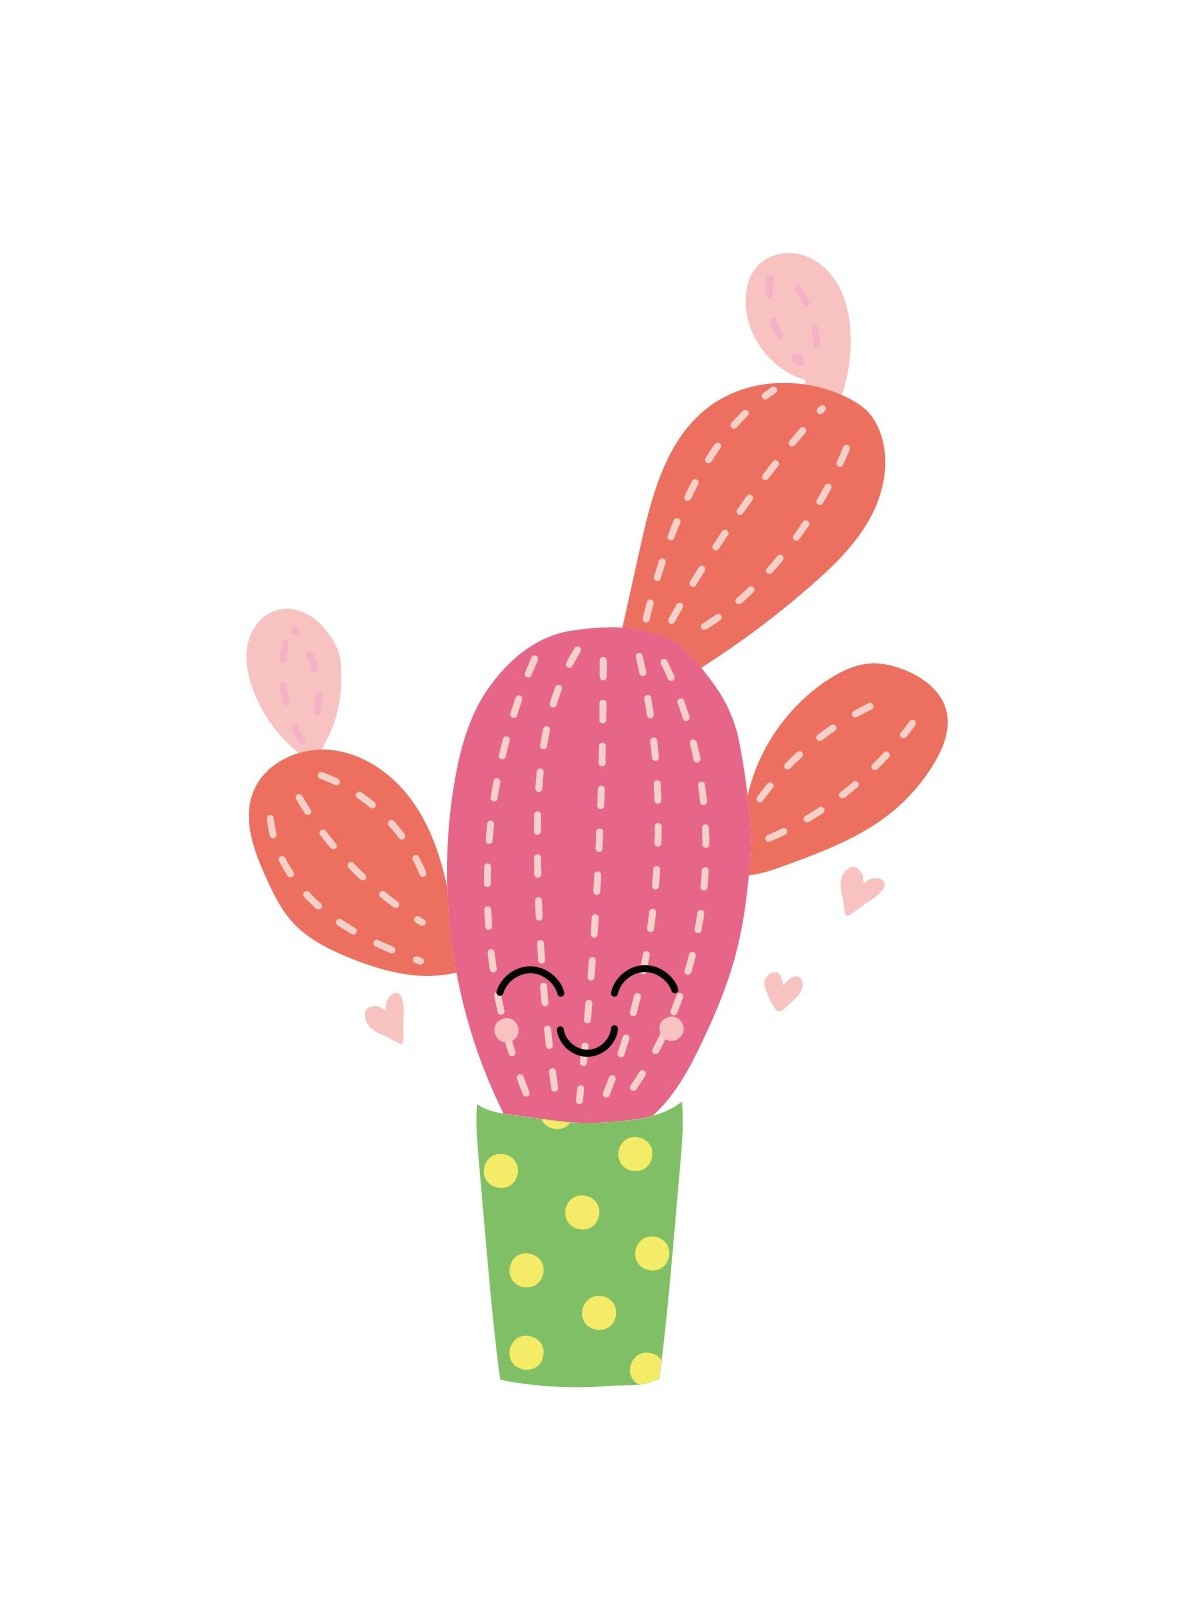 Stickers Autocollants enfant dÃ©co Cactus rose sourire design ref 474